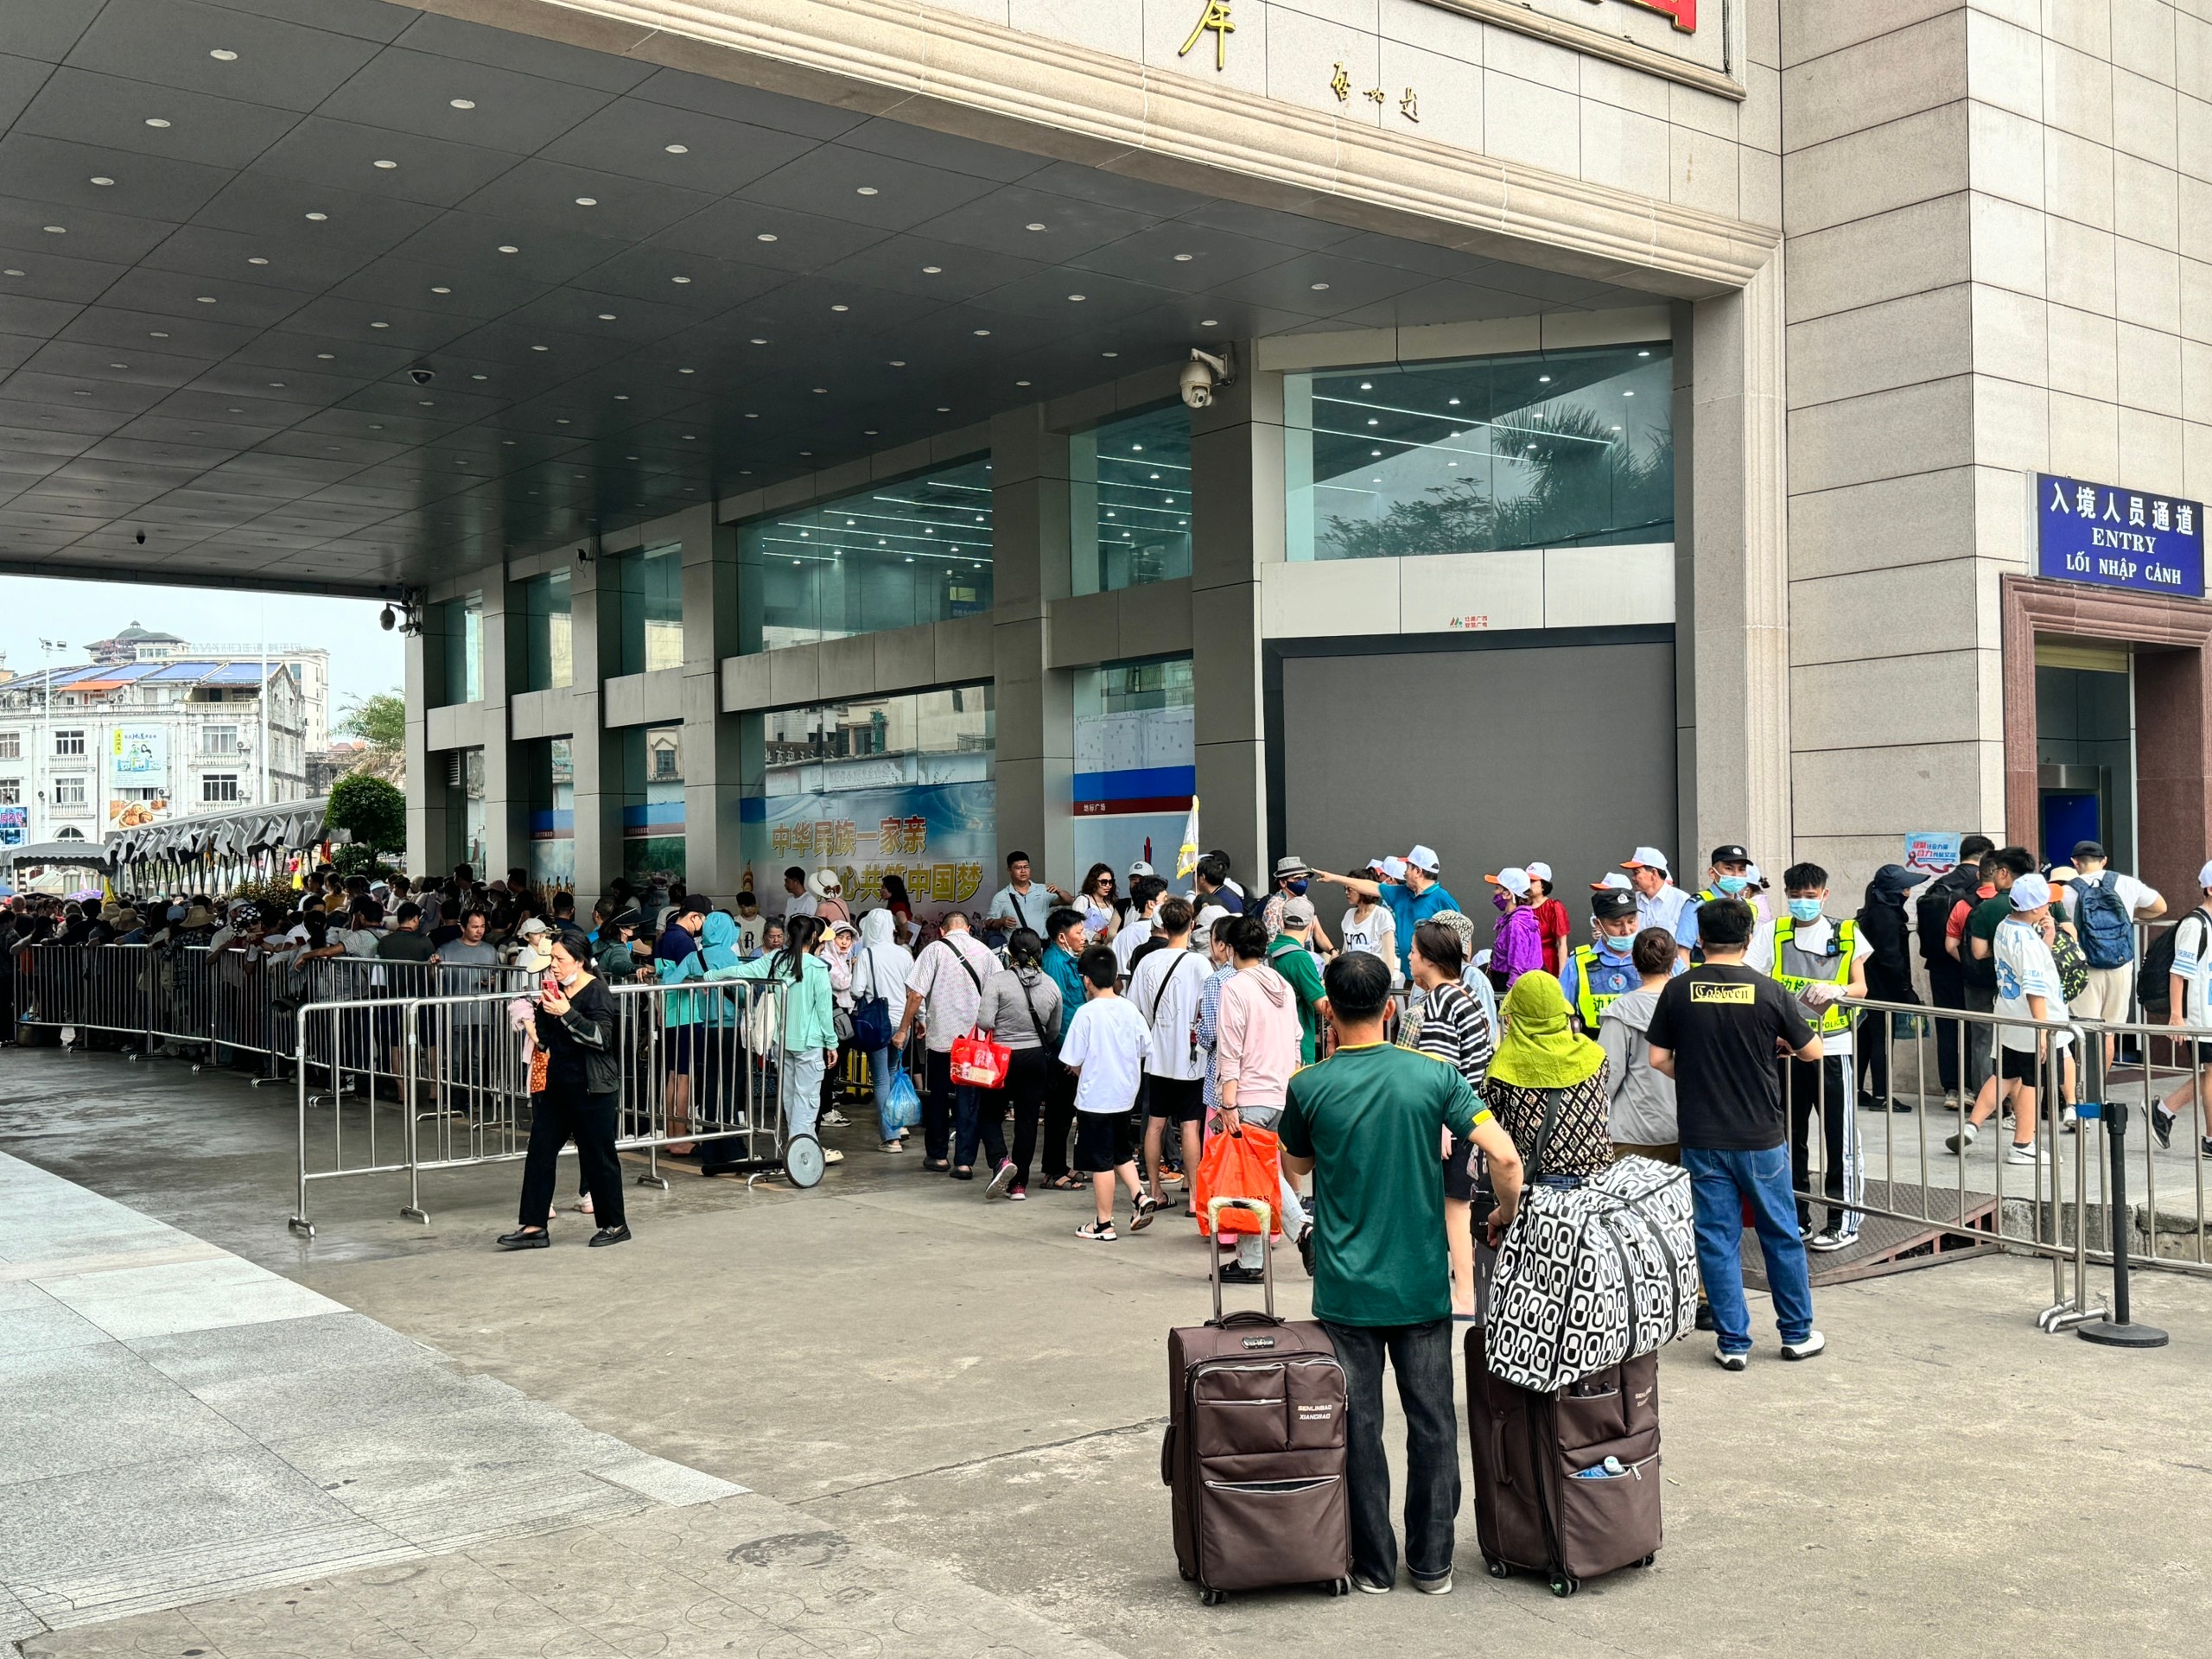 Los turistas hacen cola de forma bastante ordenada en la ciudad de Dong Hung (China) para realizar el check-in